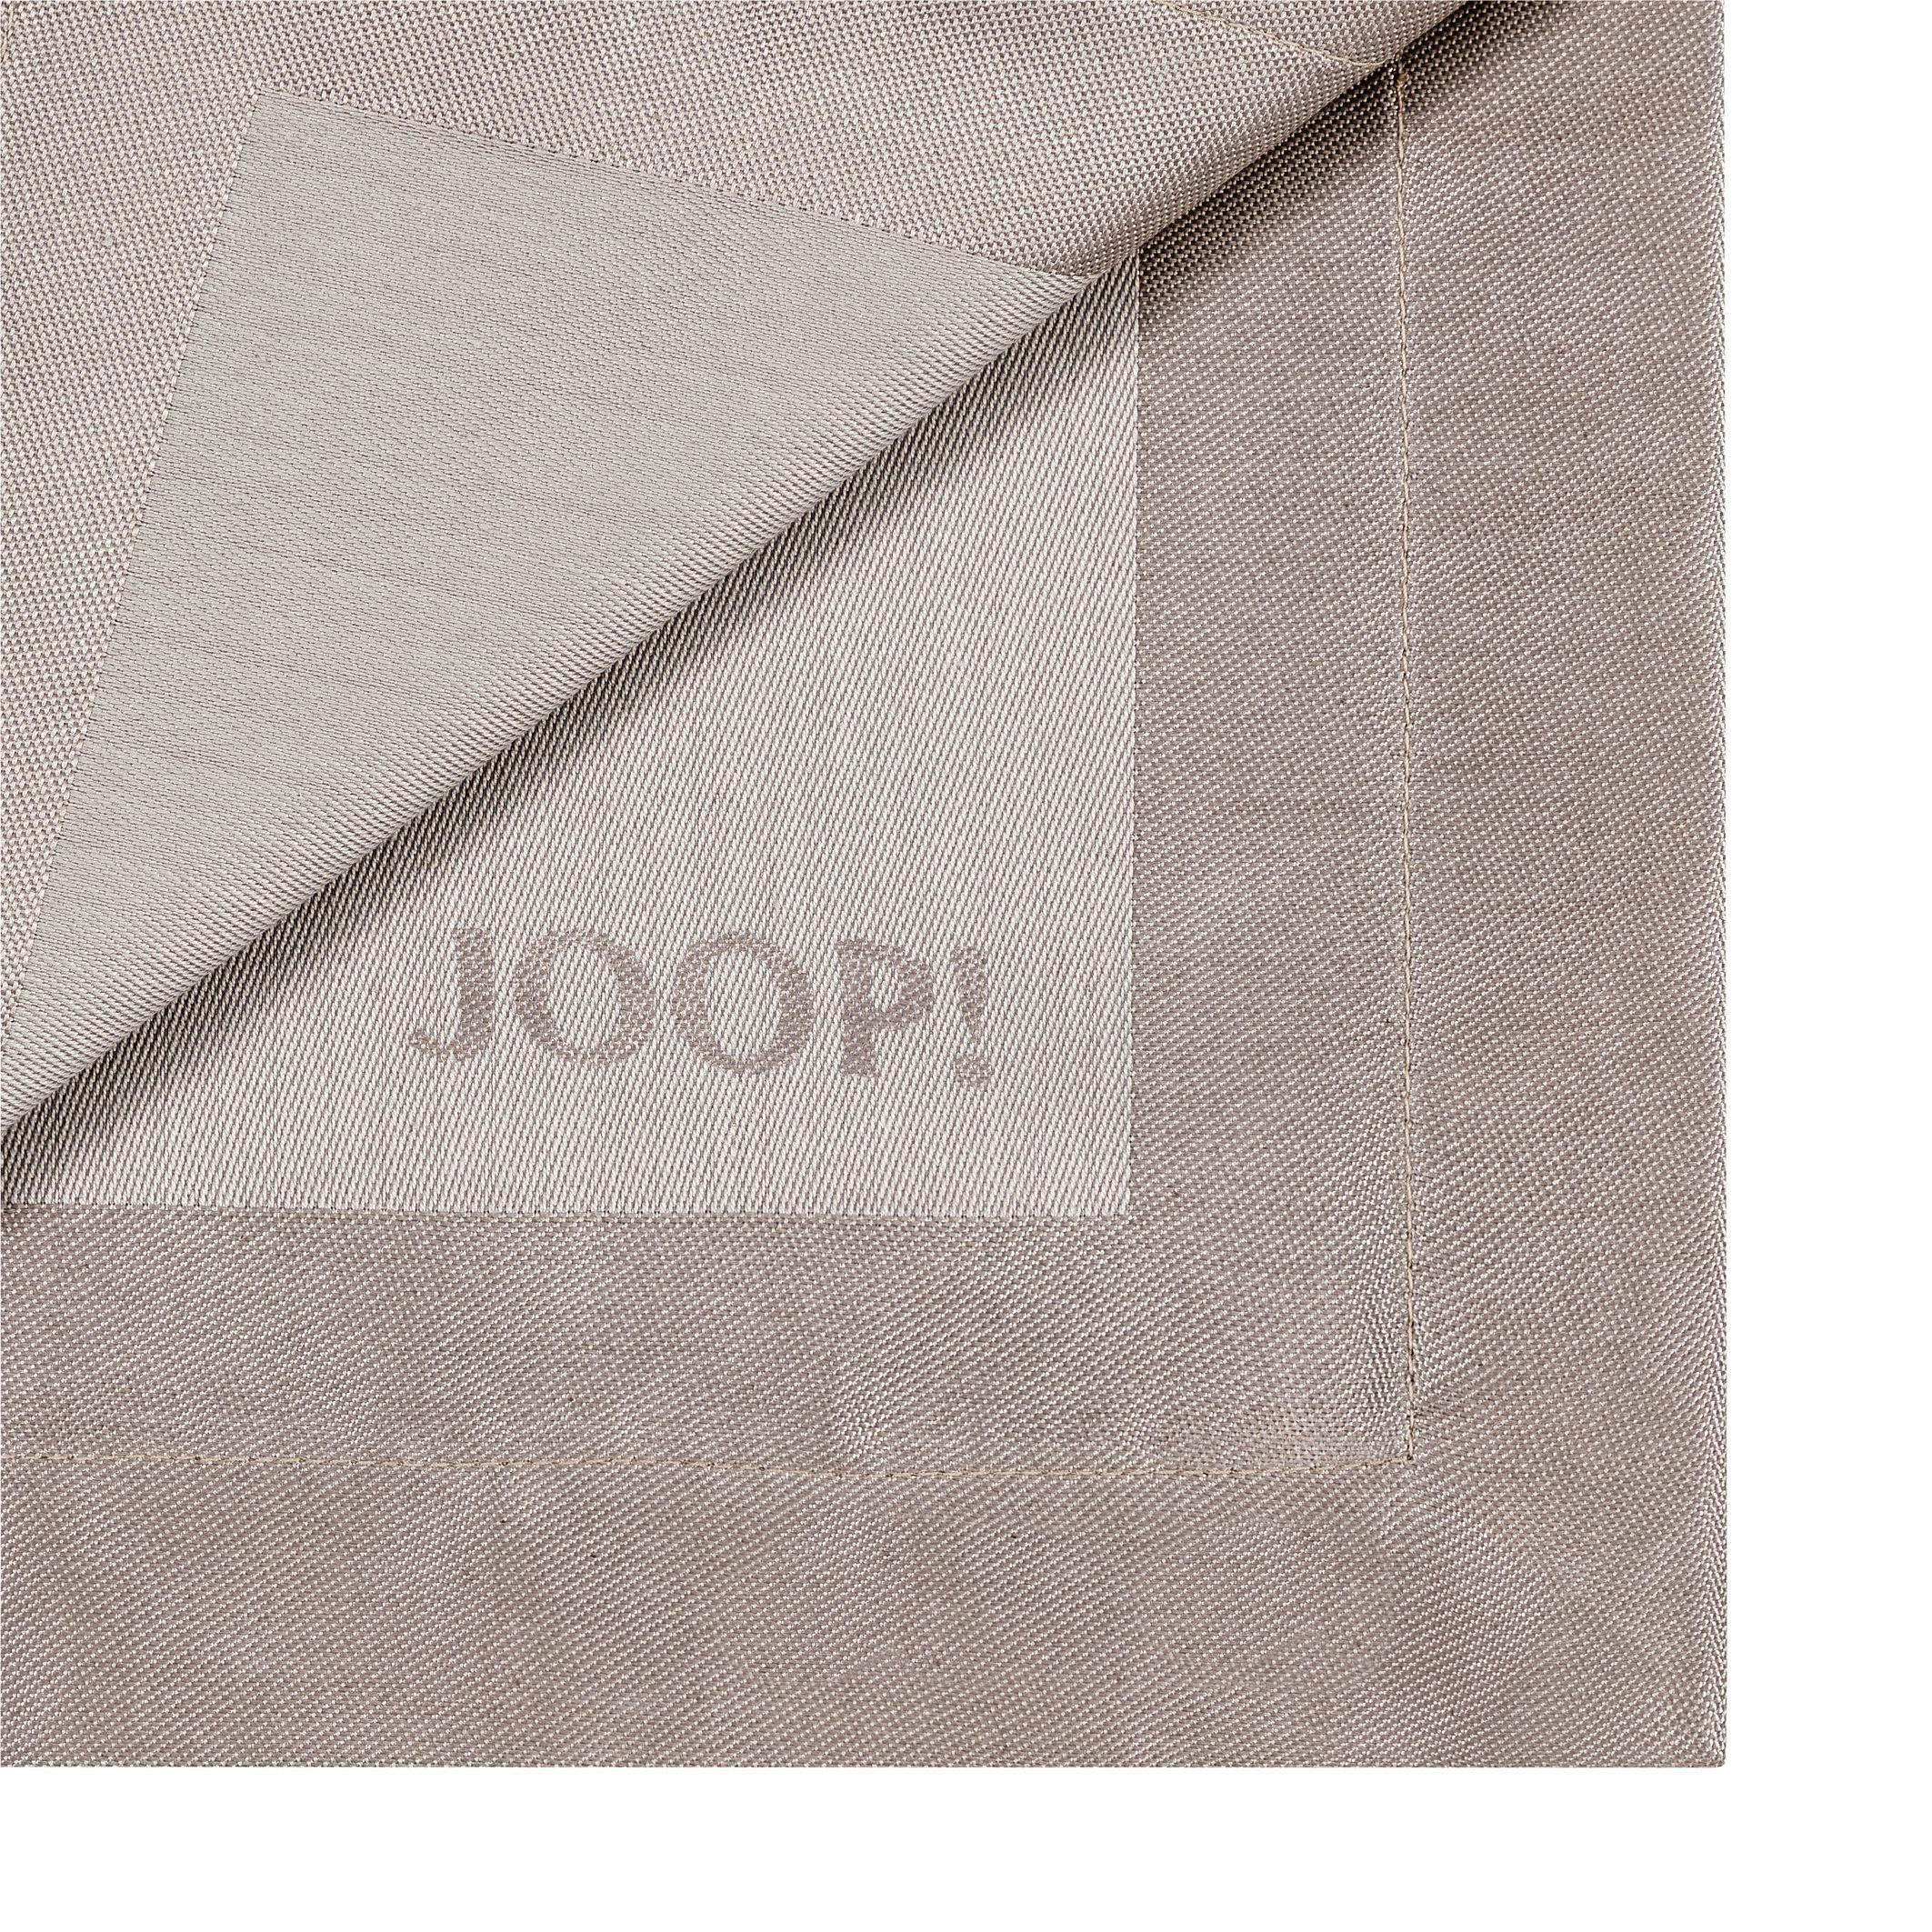 TISCHLÄUFER Signature 50/160 cm  - Sandfarben, Design, Textil (50/160cm) - Joop!